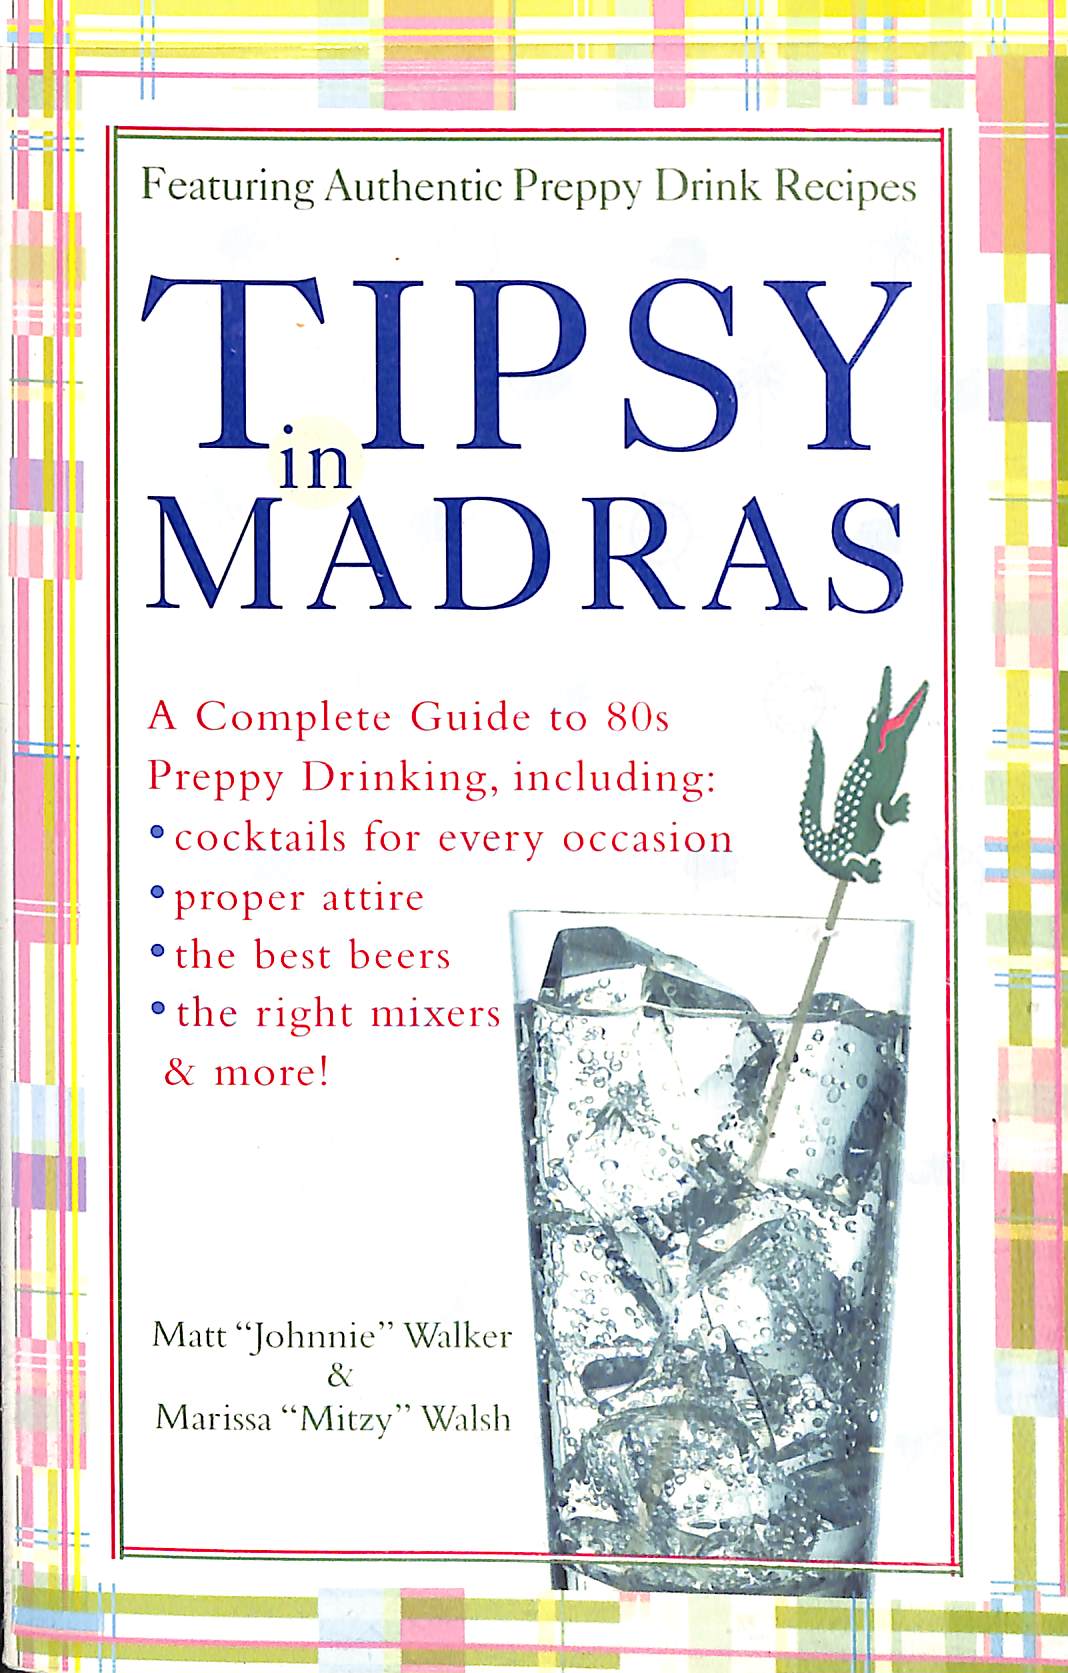 "Tipsy In Madras" 2004 WALKER, Matt "Johnnie & WALSH, Marissa "Mitzy"